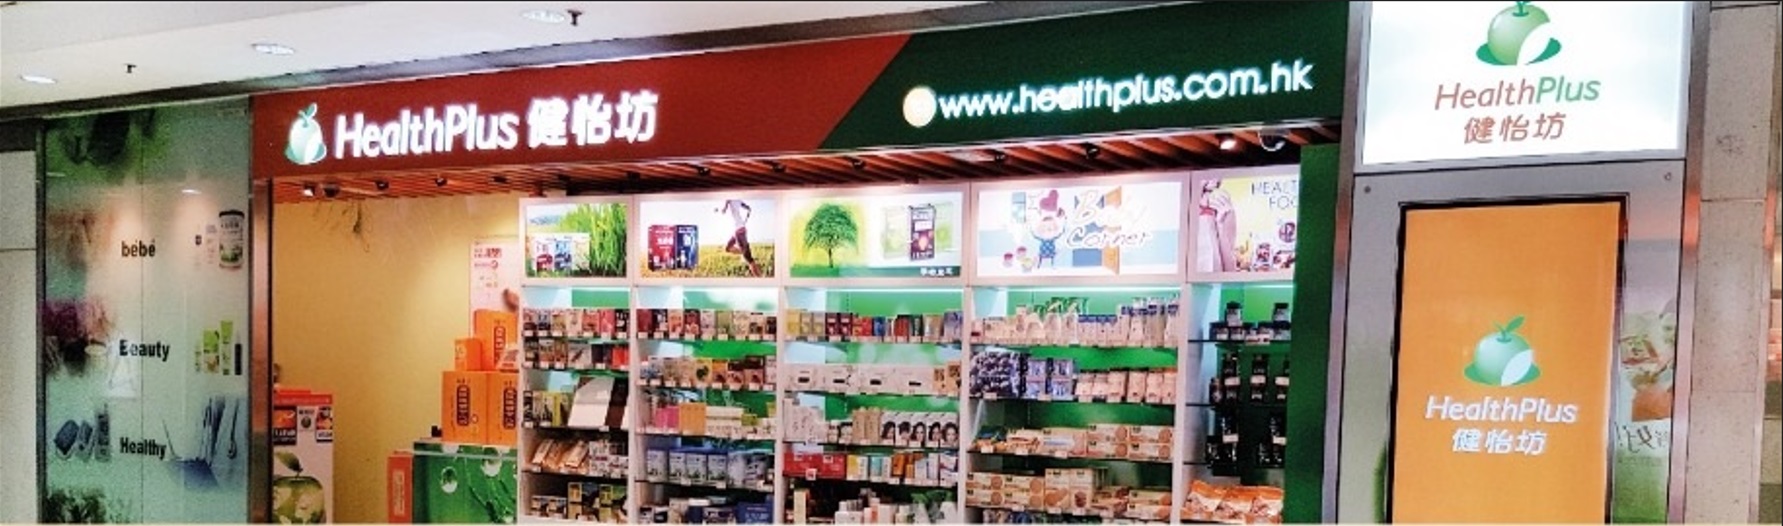 healthplus shop